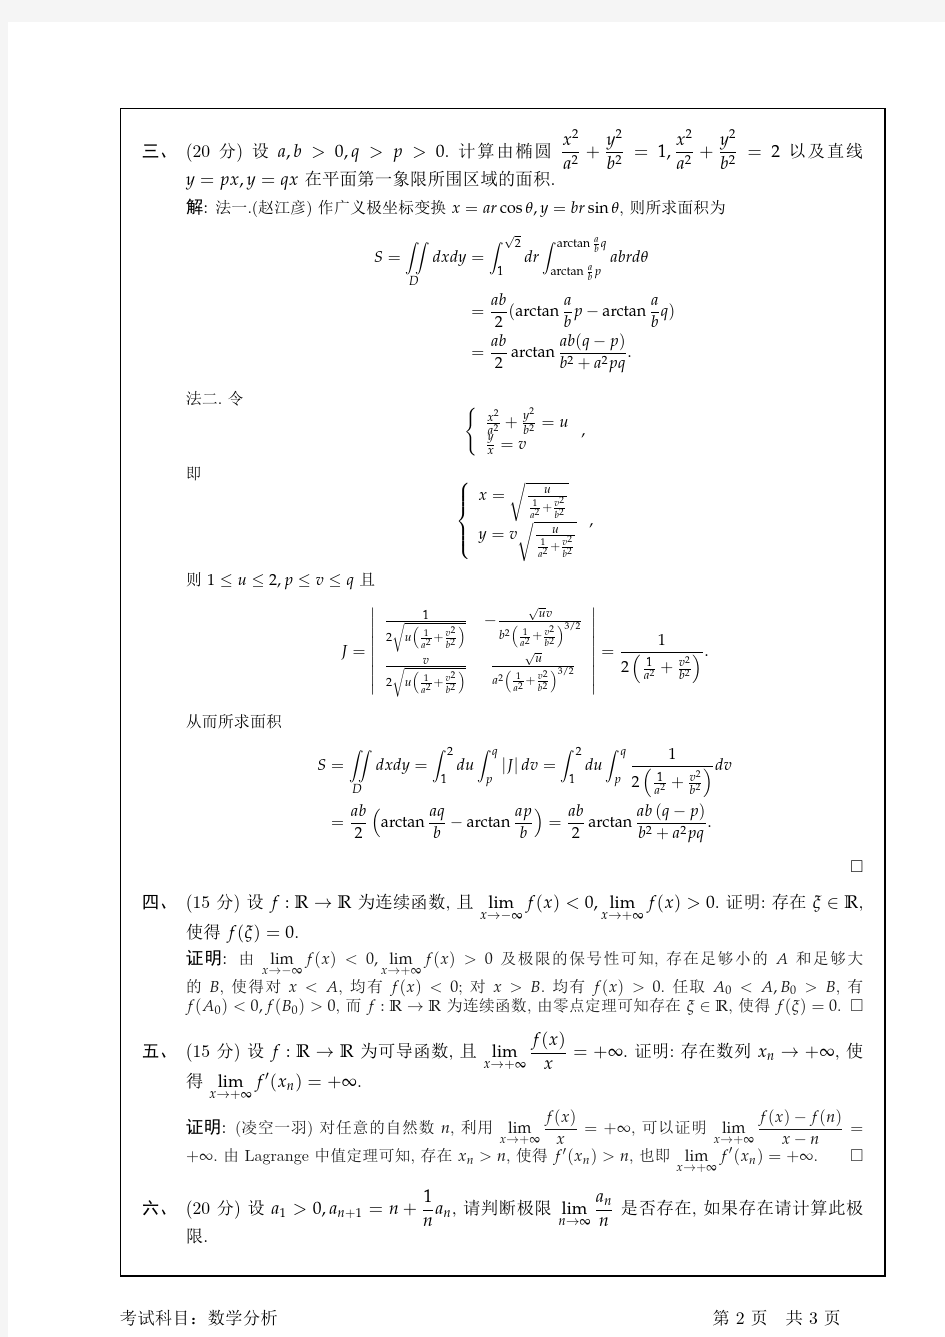 2015南京大学数学分析解答(熊哥)